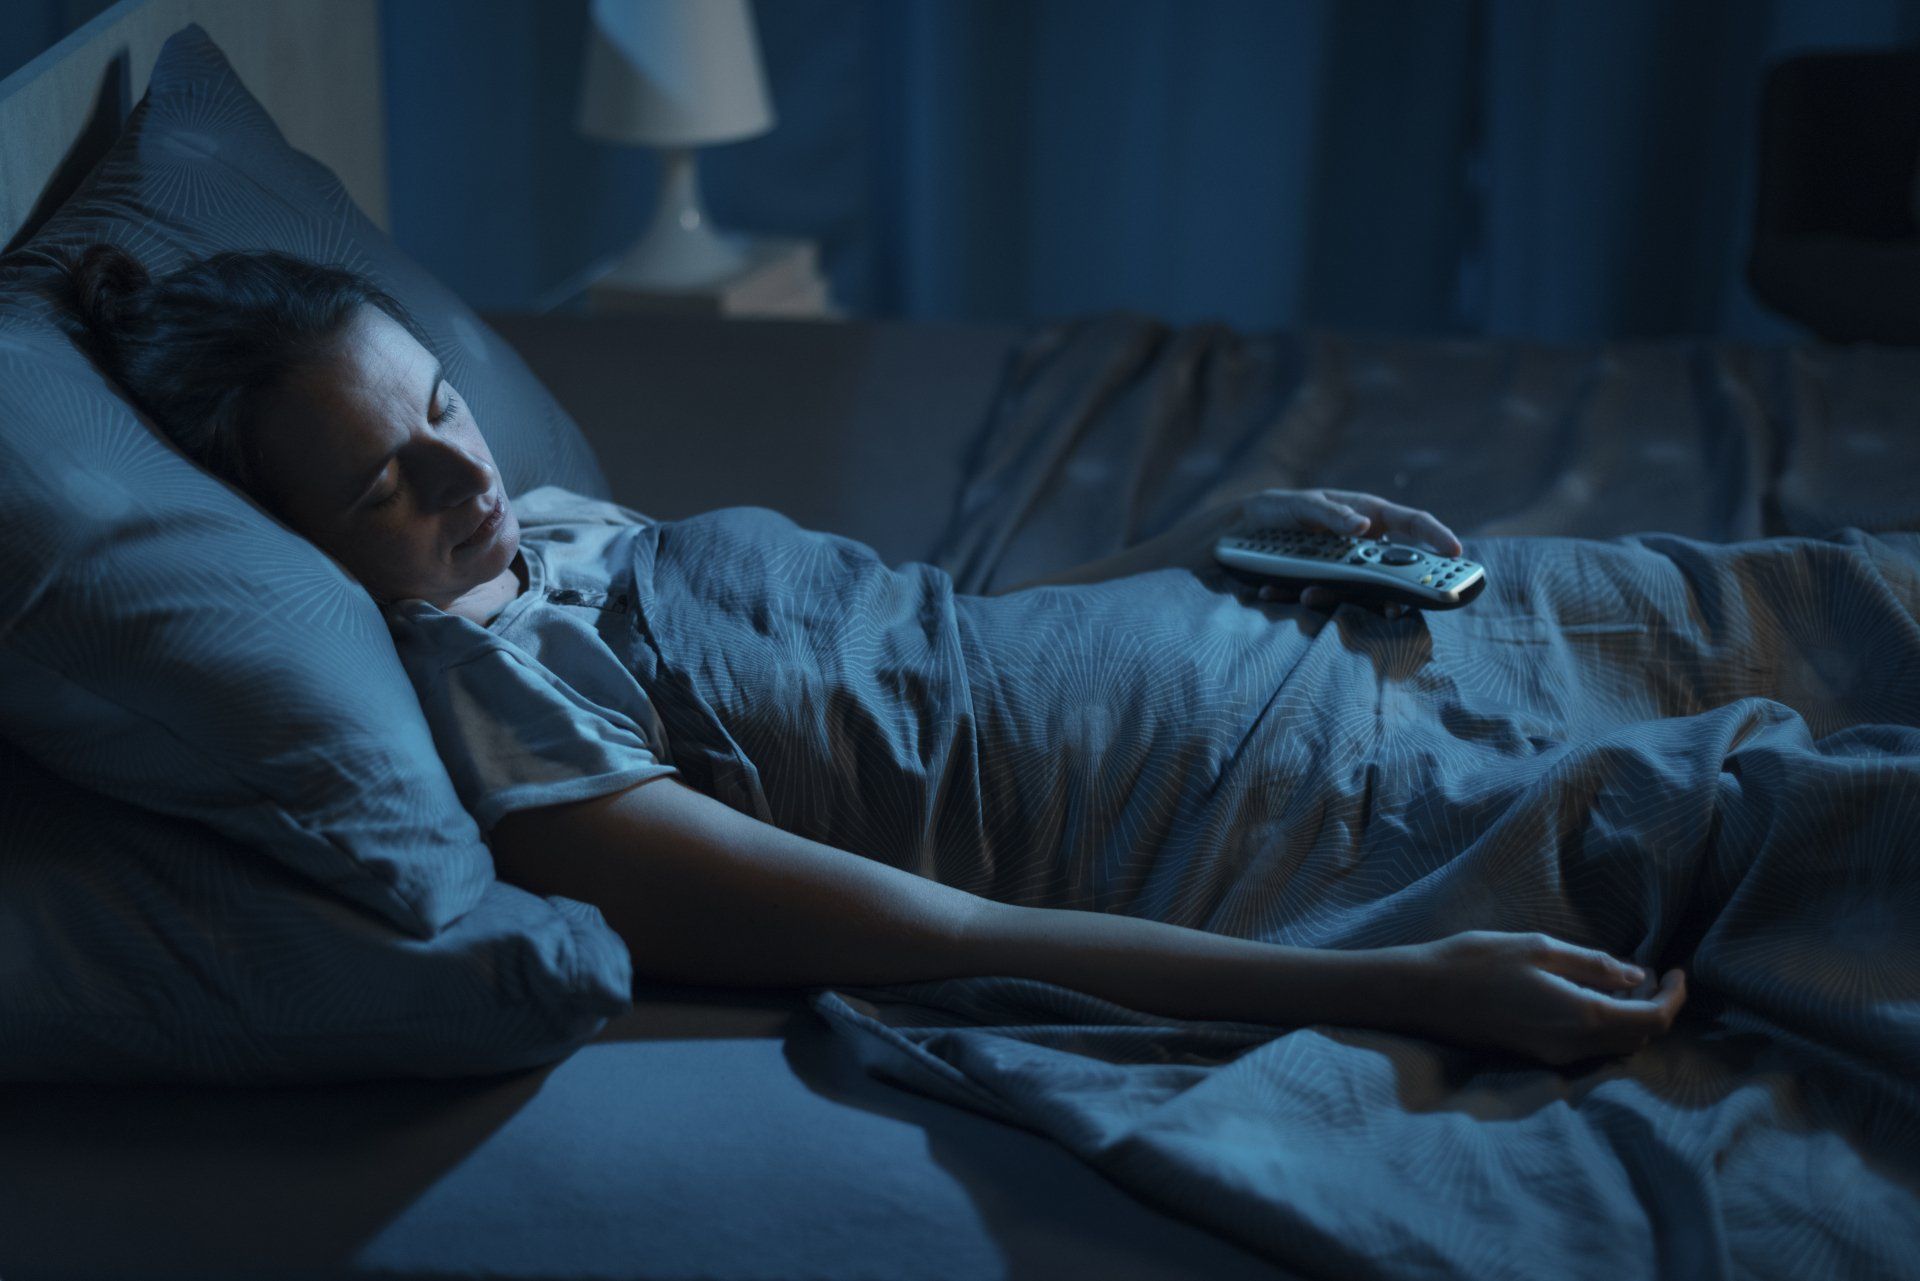 Mulher dormindo com a luz apagada e televisão ligada, com celular no colo